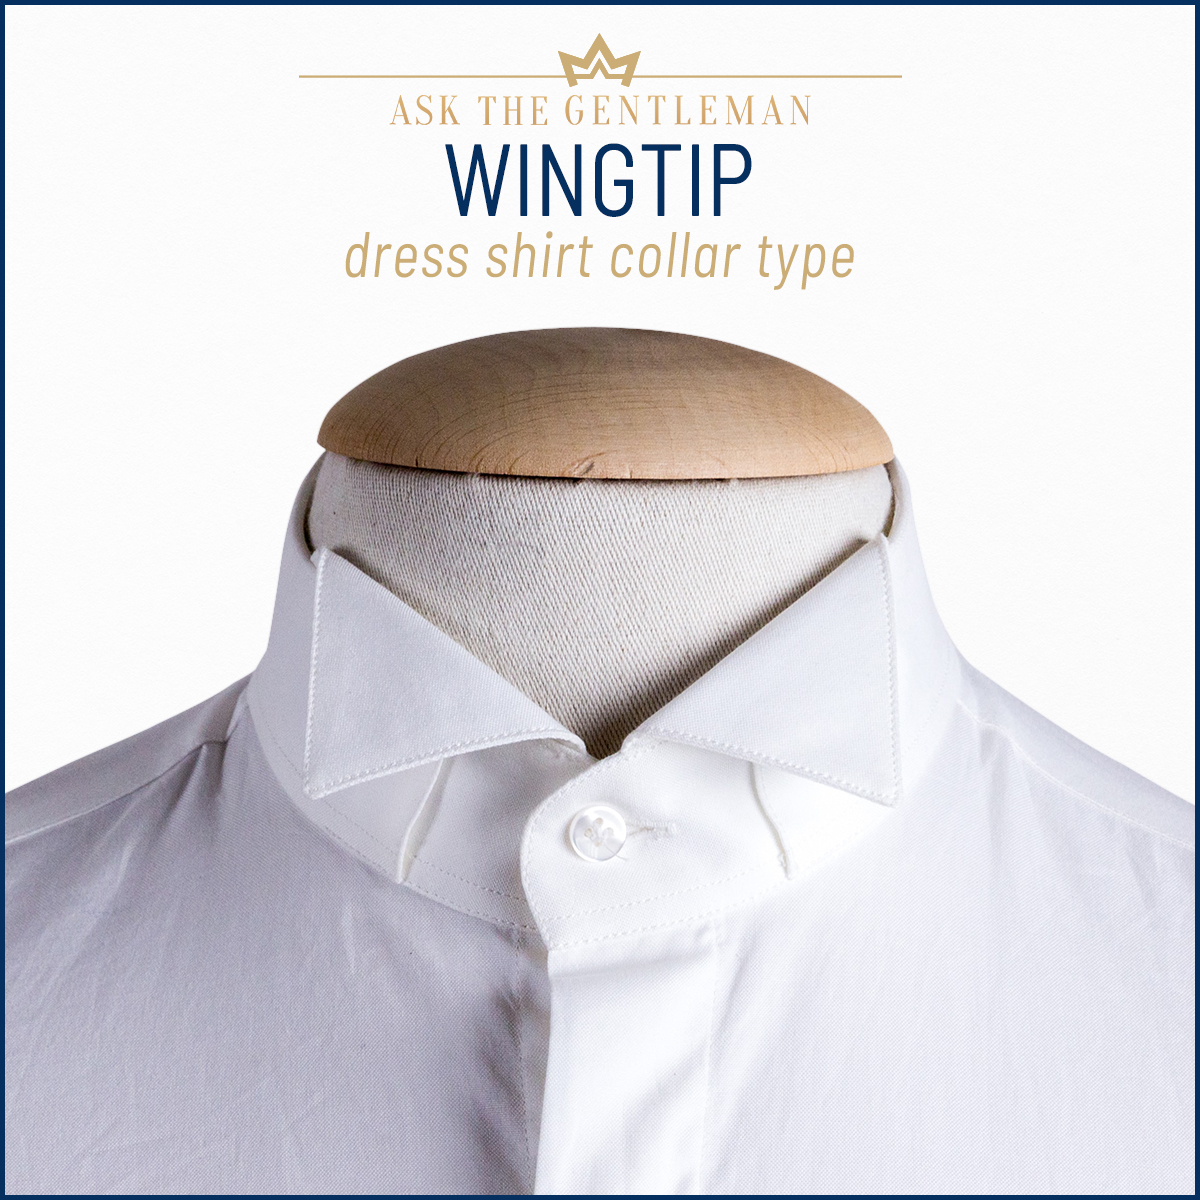 Wingtip dress shirt collar type